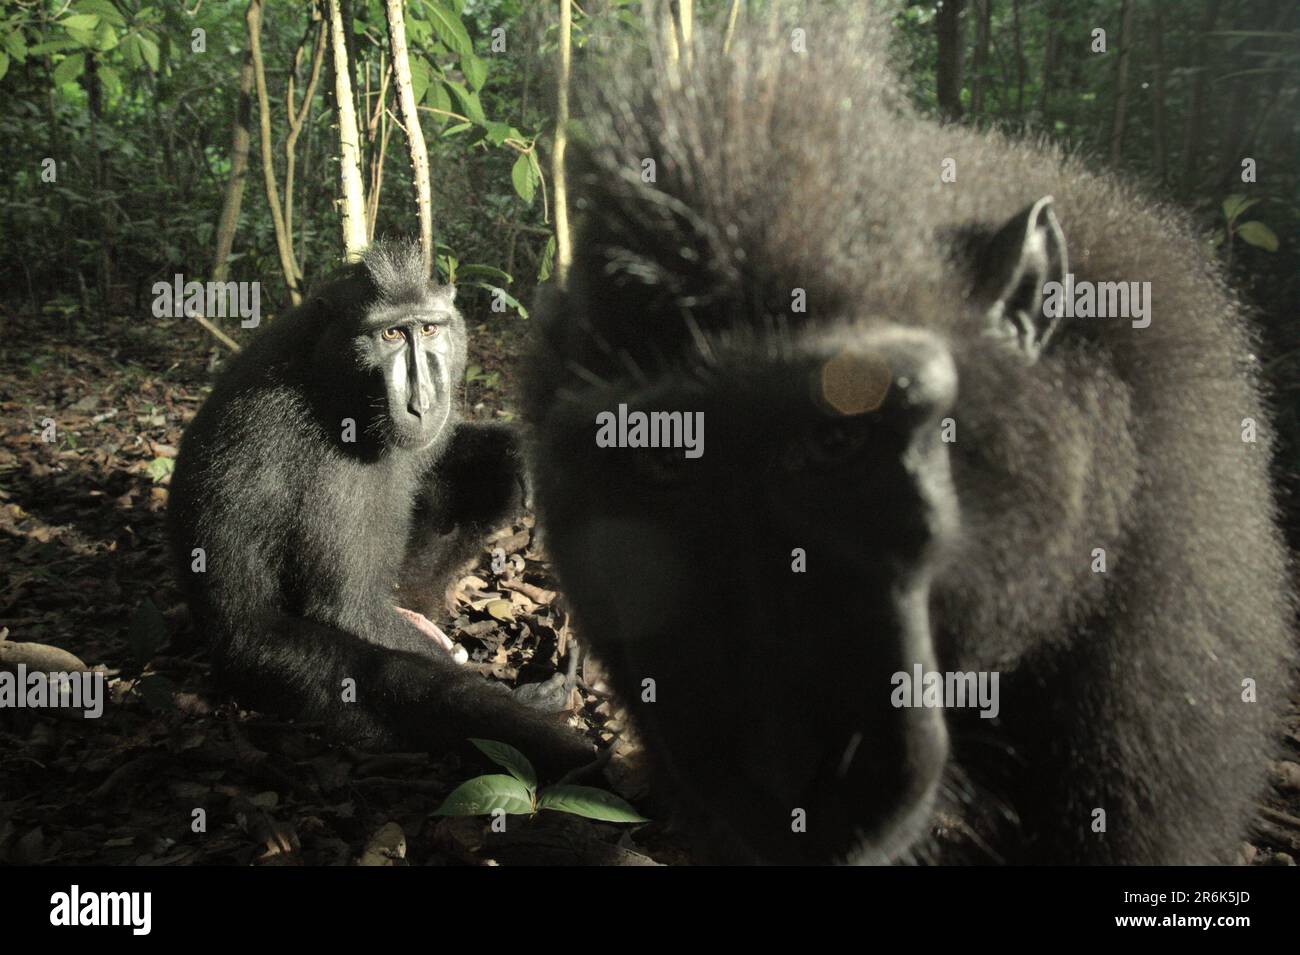 Due individui di macaco soldato (Macaca nigra) sono fotografati nella Riserva Naturale di Tangkoko, Nord Sulawesi, Indonesia. In un futuro più caldo, i primati dovrebbero adeguarsi, con meno foraggio o non accoppiamento, il che potrebbe limitare l’assunzione complessiva di cibo e modificare i cicli riproduttivi. Anche senza il fattore del cambiamento climatico, Macaca nigra è uno dei 25 primati più in pericolo sulla terra, e si prevede che si estinguerà entro il 2050, secondo gli scienziati. Foto Stock